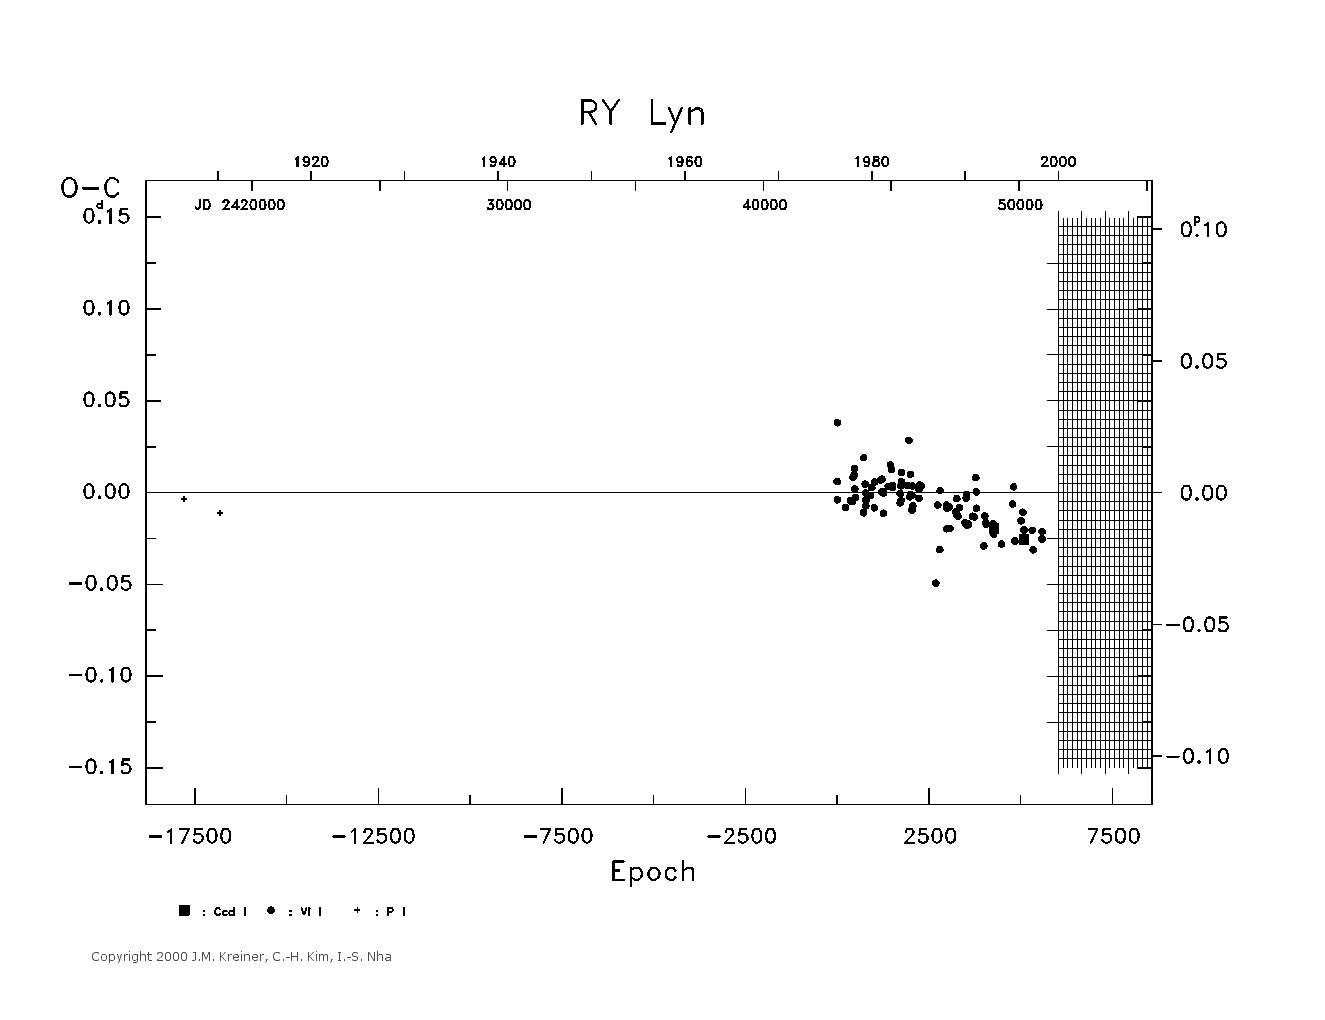 [IMAGE: large RY LYN O-C diagram]